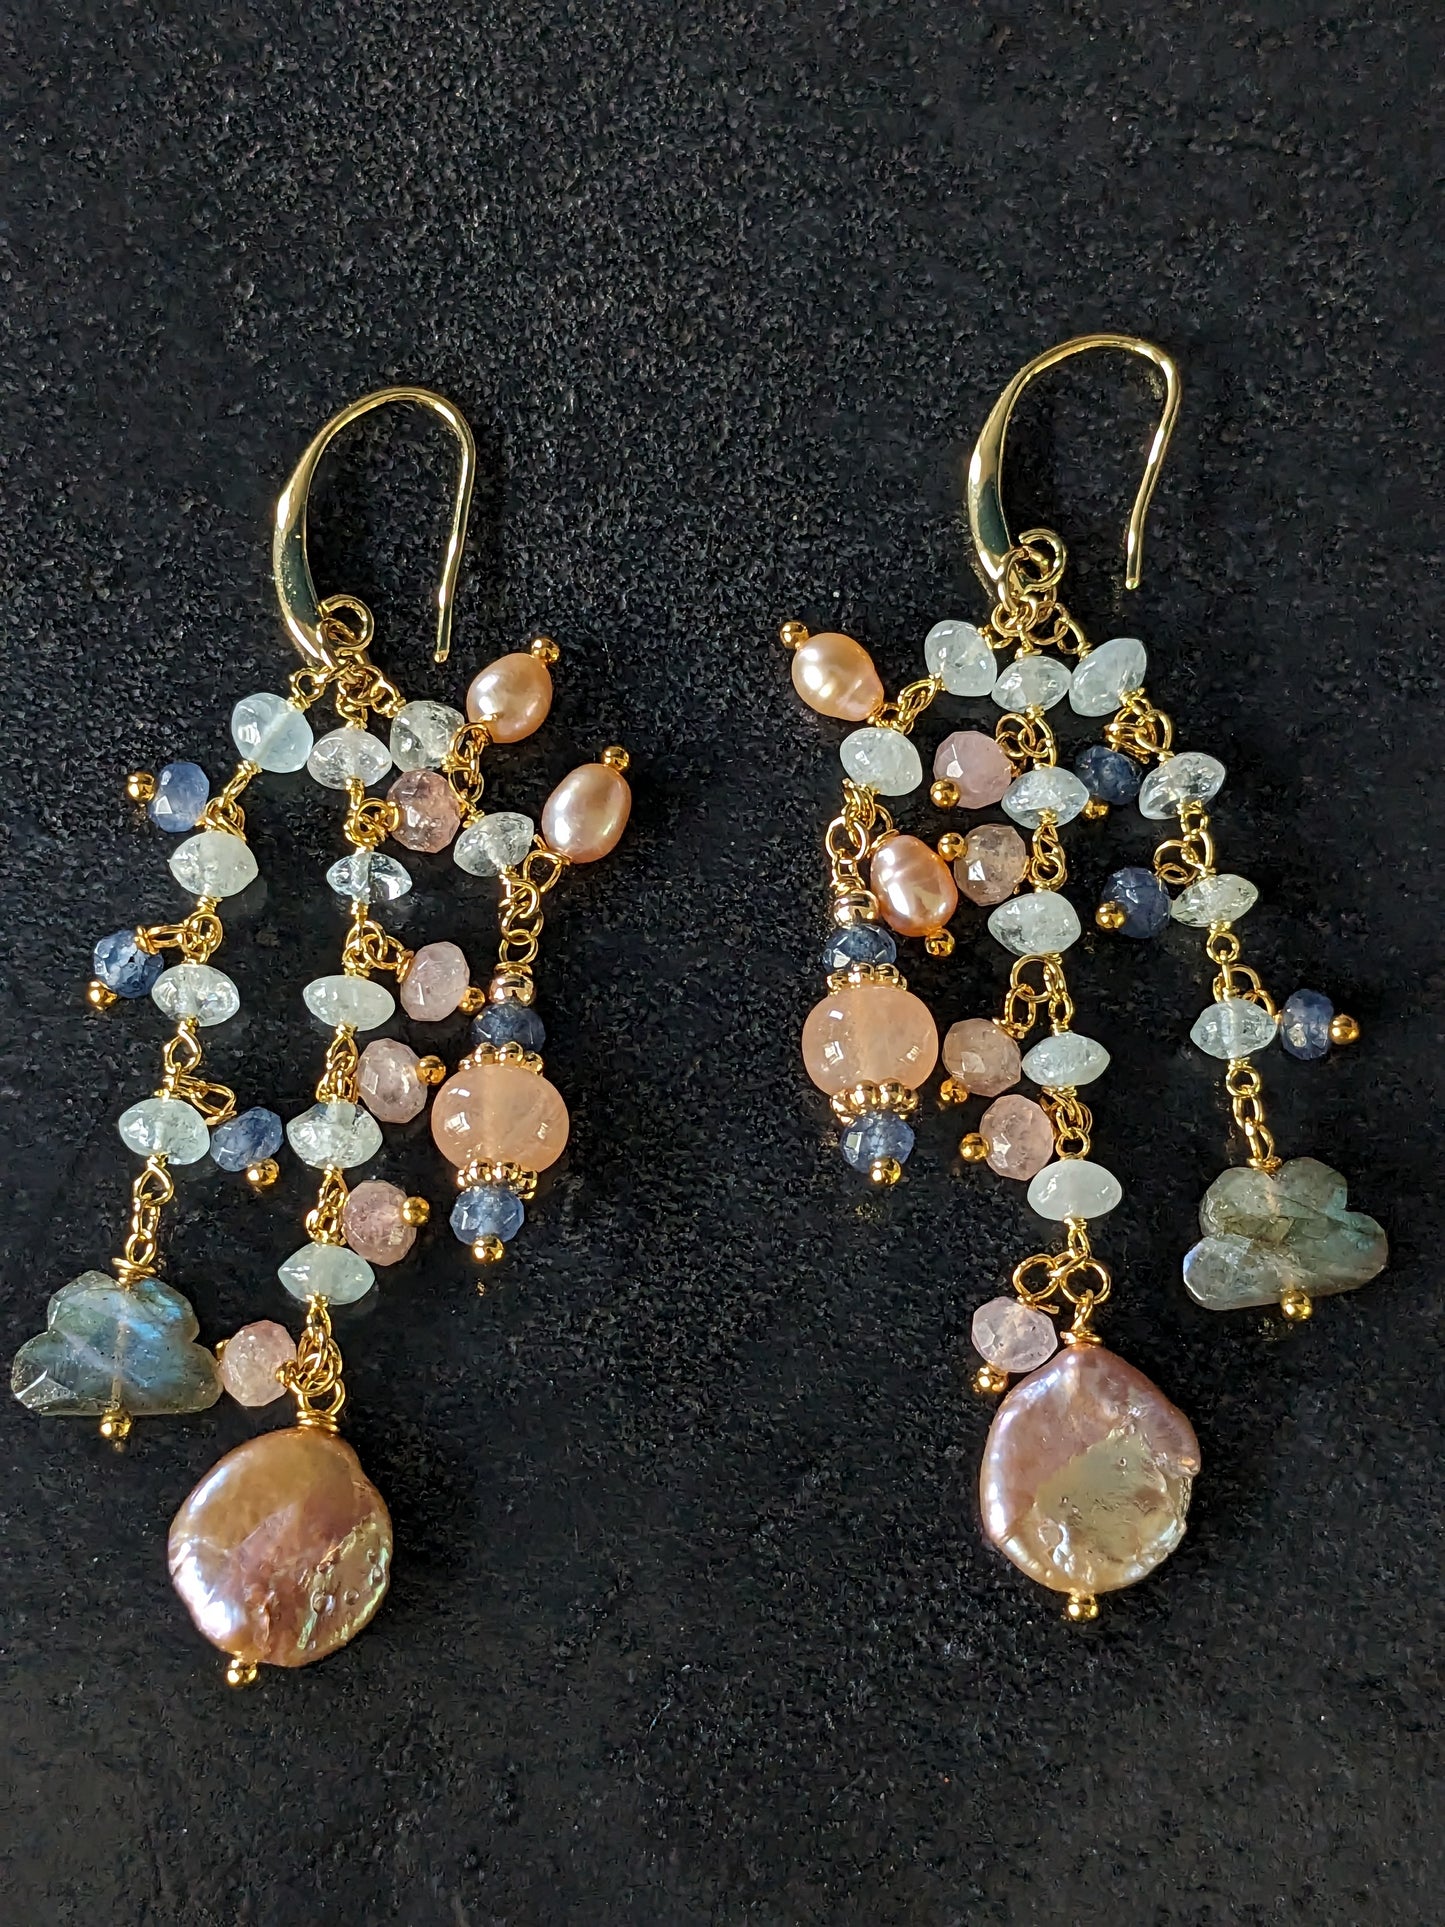 Boucles d'oreilles Samyukta faites à la main, composées de pierres fines colorées et de perles d'eau douce, suspendues à une chainette plaquée or avec Aigue Marine.